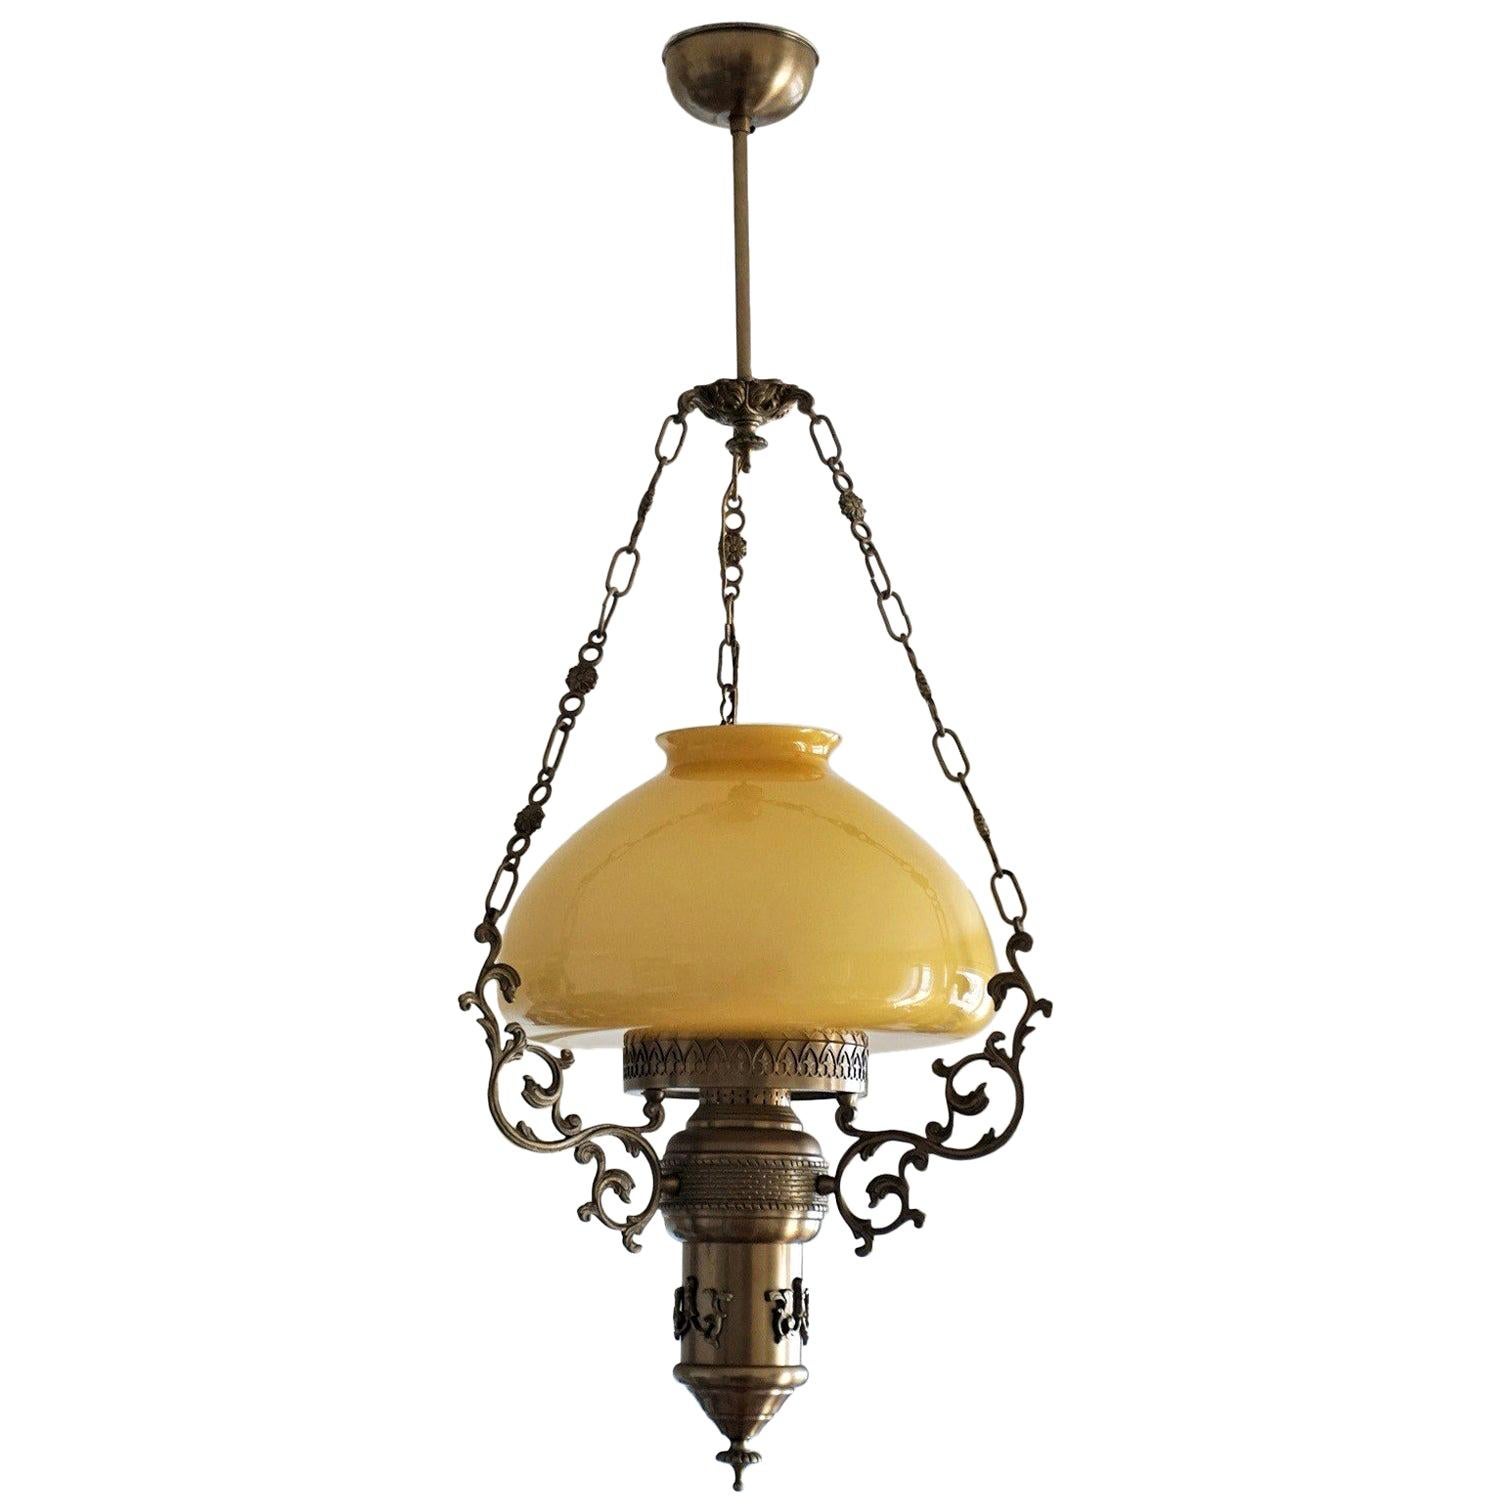 Lanterne de suspension en laiton bruni et verre opalin de style Art Nouveau, vers 1950. Trois chaînes de suspension en laiton reliées à un dais décoratif. Une haute cheminée en verre transparent est incluse.
Un support d'ampoule E27.
Mesures